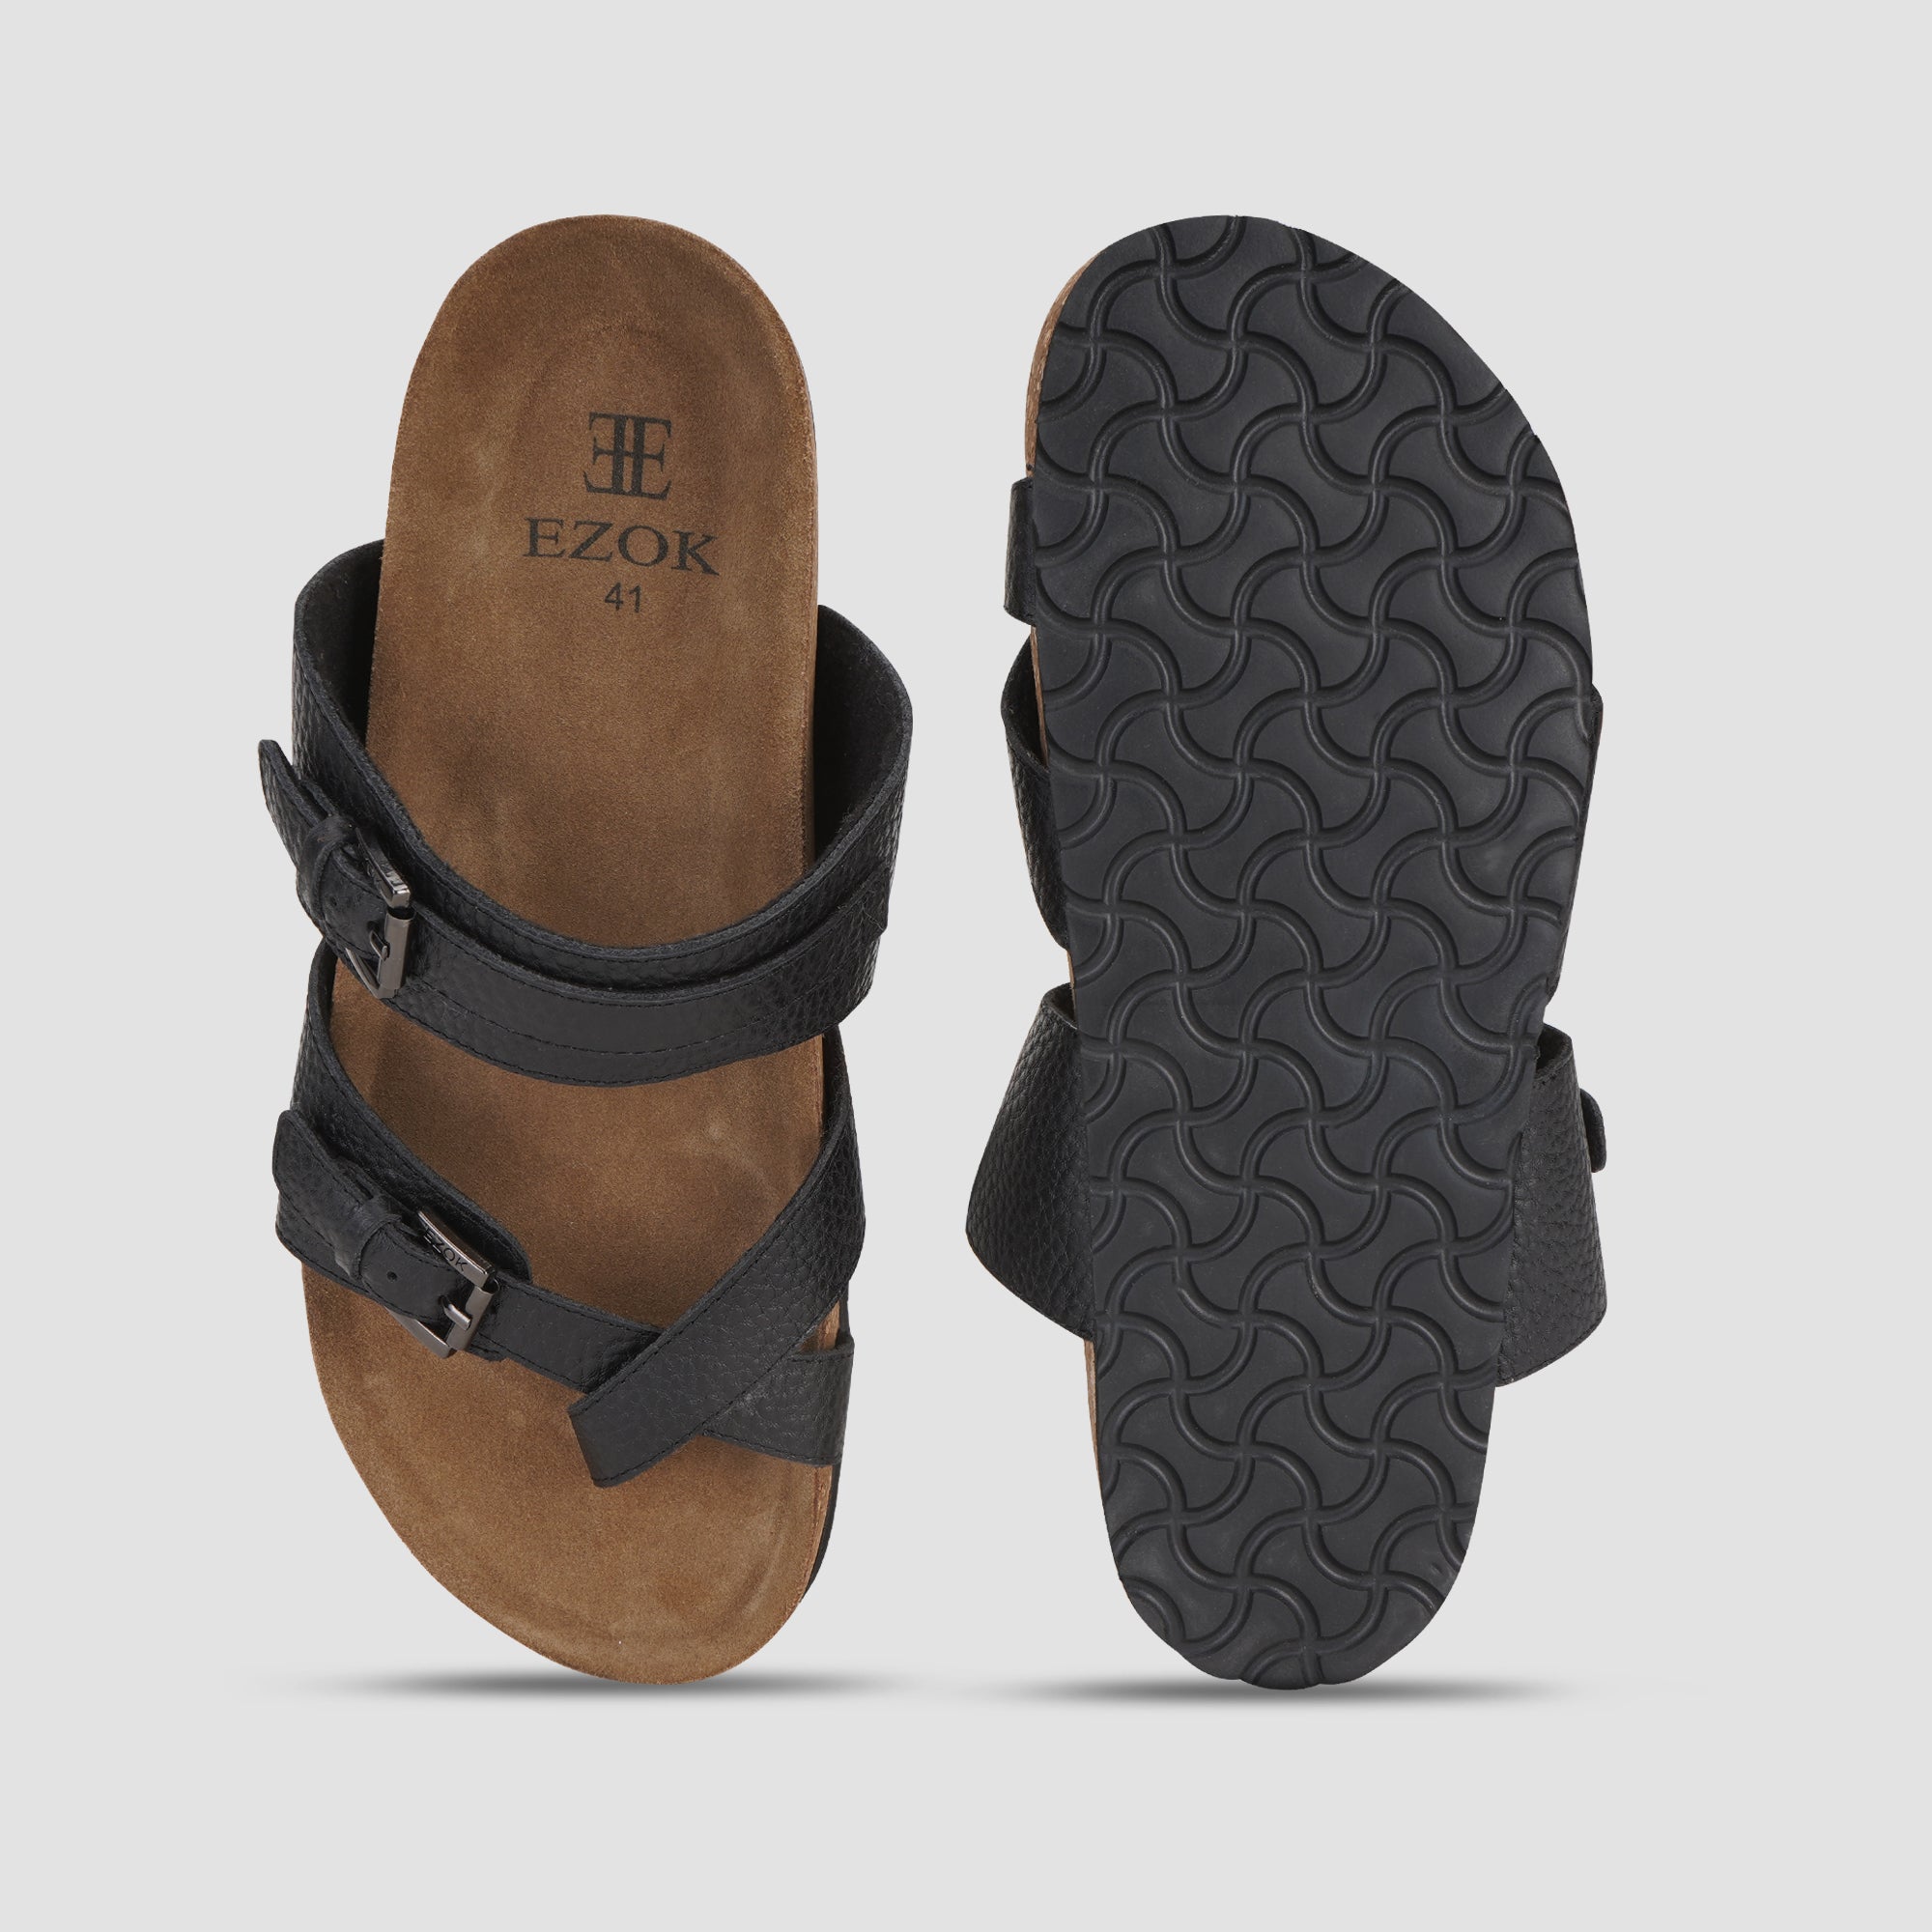 Ezok Black Leather Sandal For Men